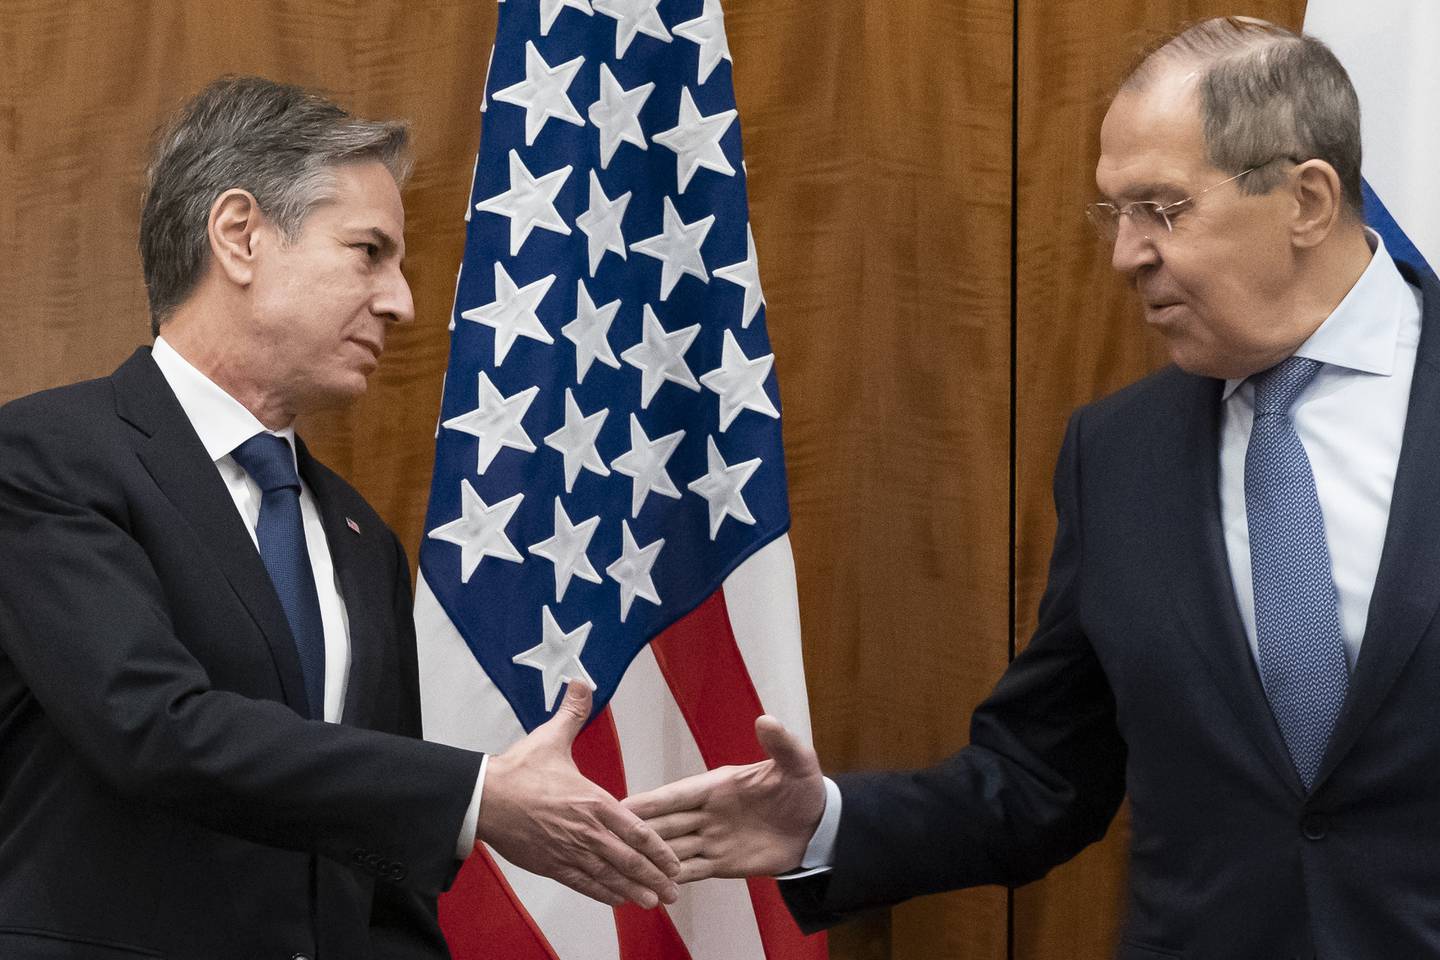 USAs utenriksminister Antony Blinken møtte fredag sin russiske kollega Sergej Lavrov i et forsøk på å minke spenningen. Foto: Alex Brandon / AP / NTB